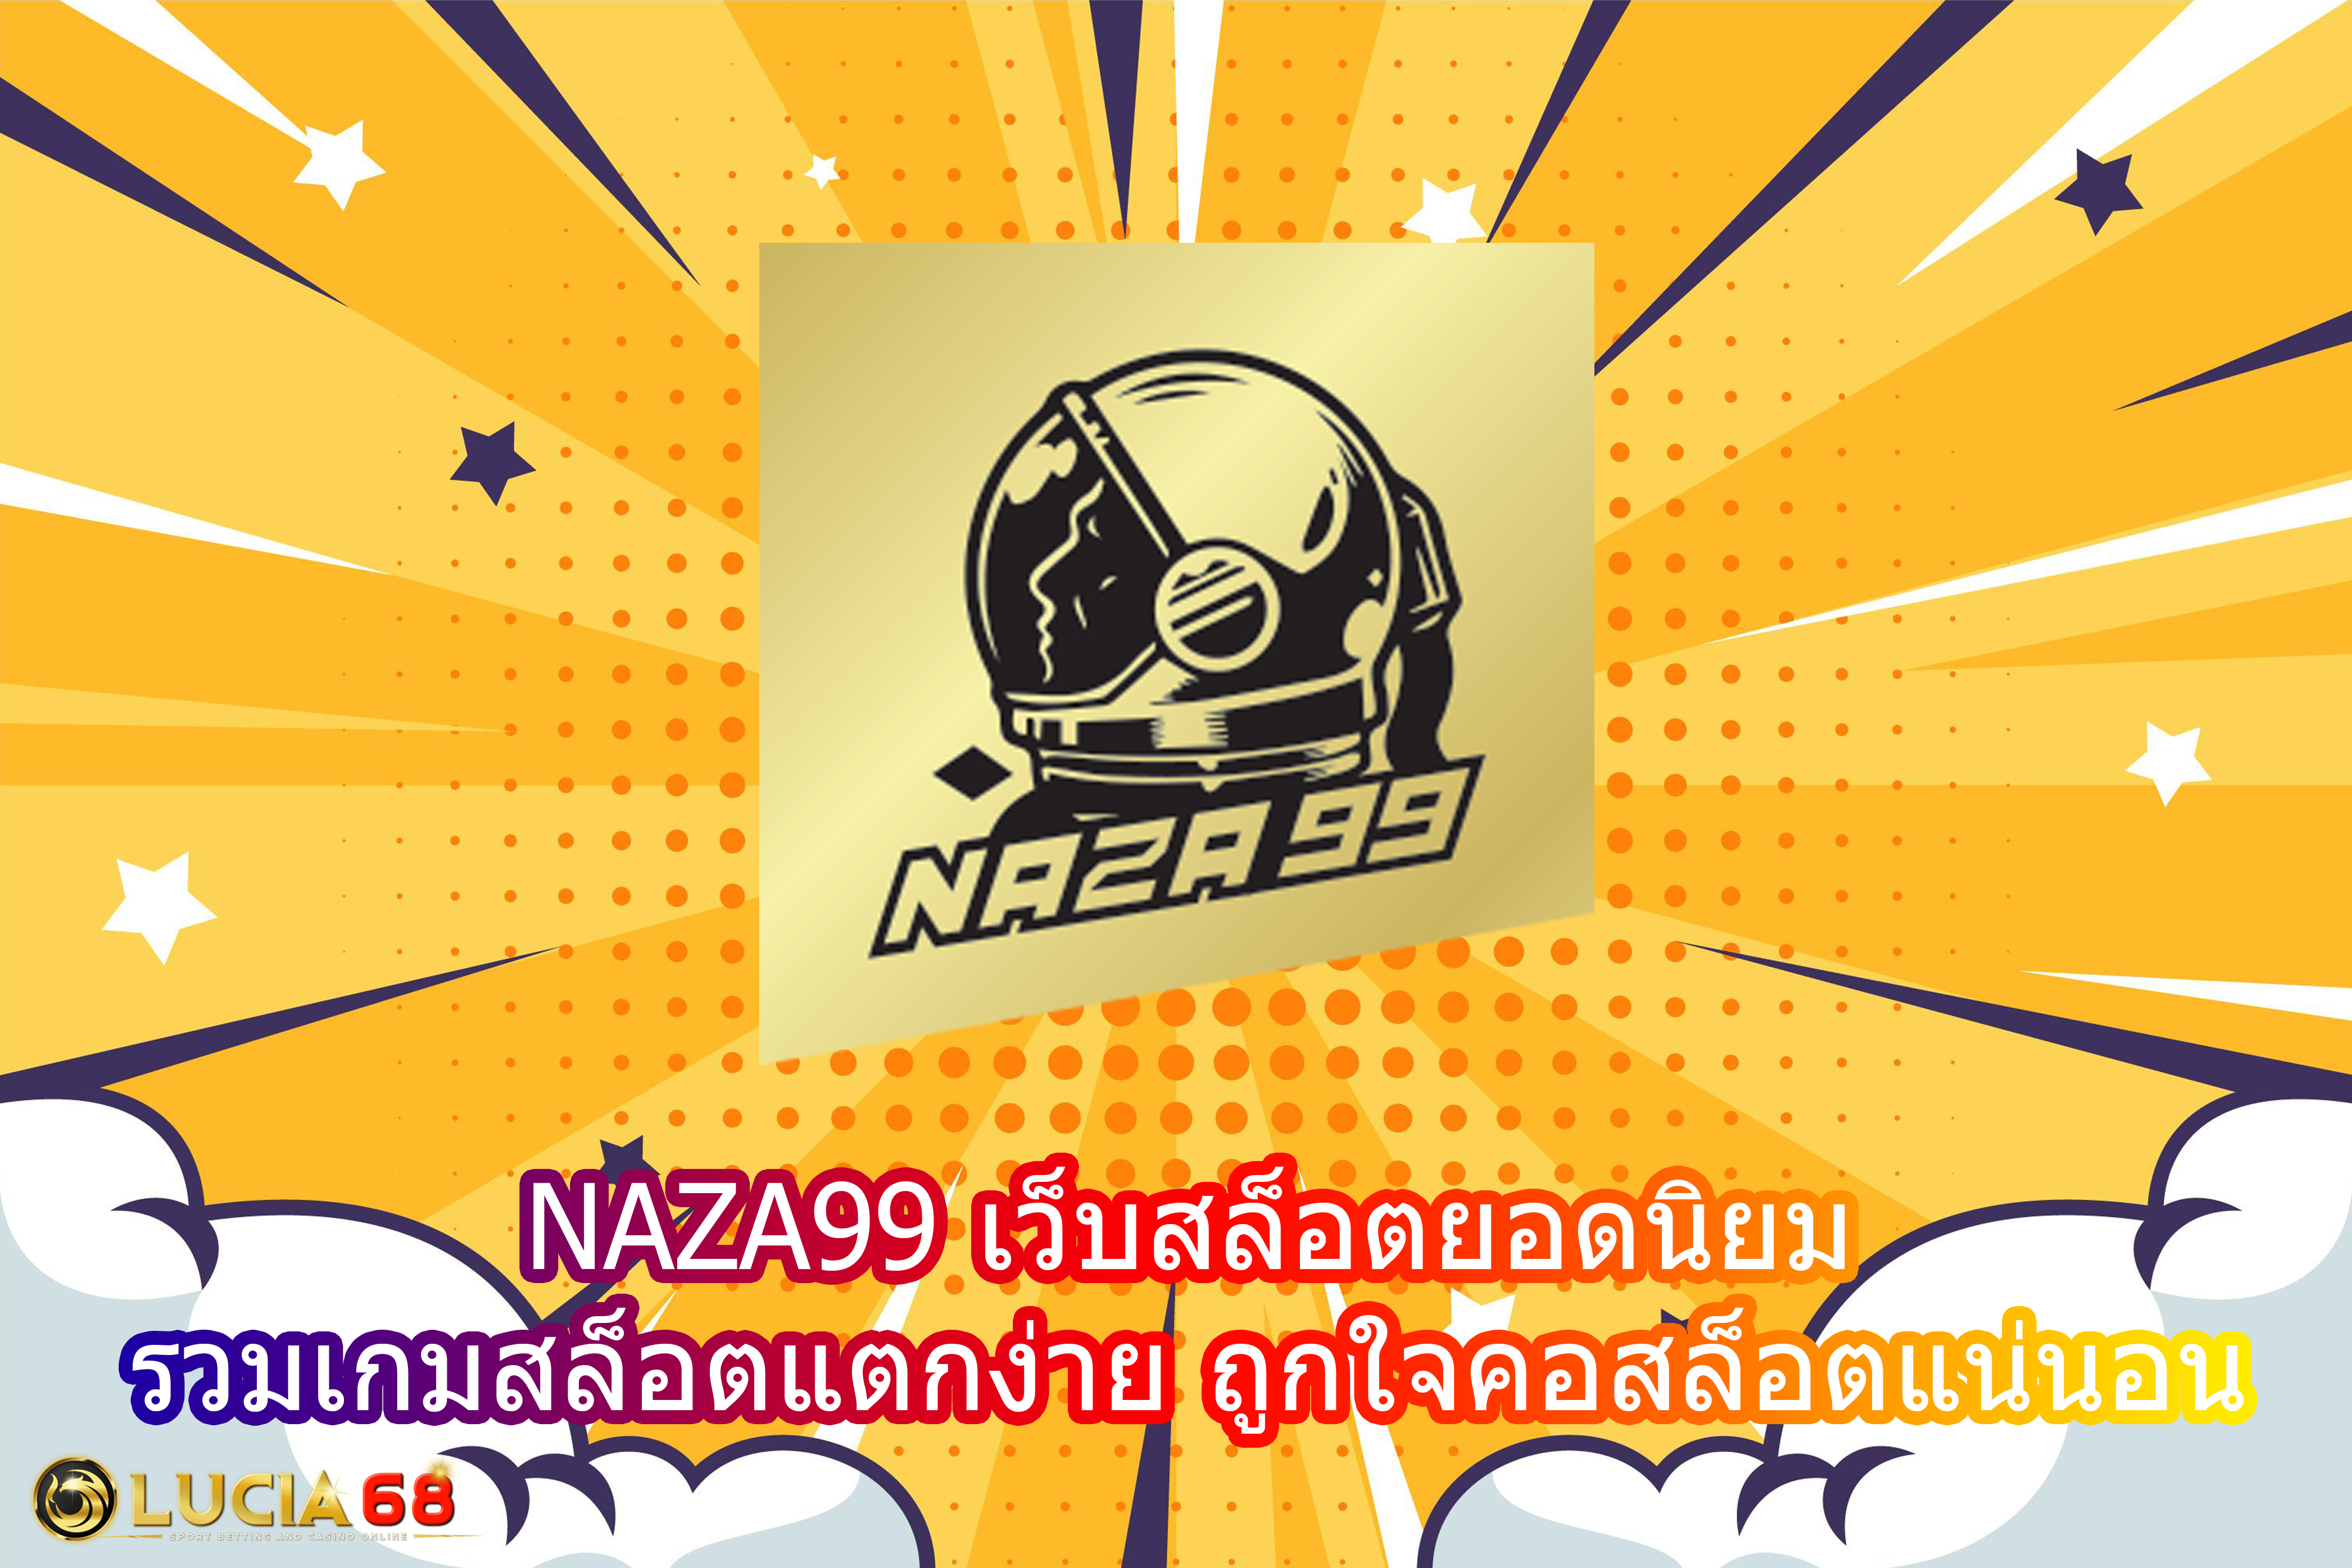 NAZA99 เว็บสล็อตยอดนิยม รวมเกมสล็อตแตกง่าย ถูกใจคอสล็อตแน่นอน